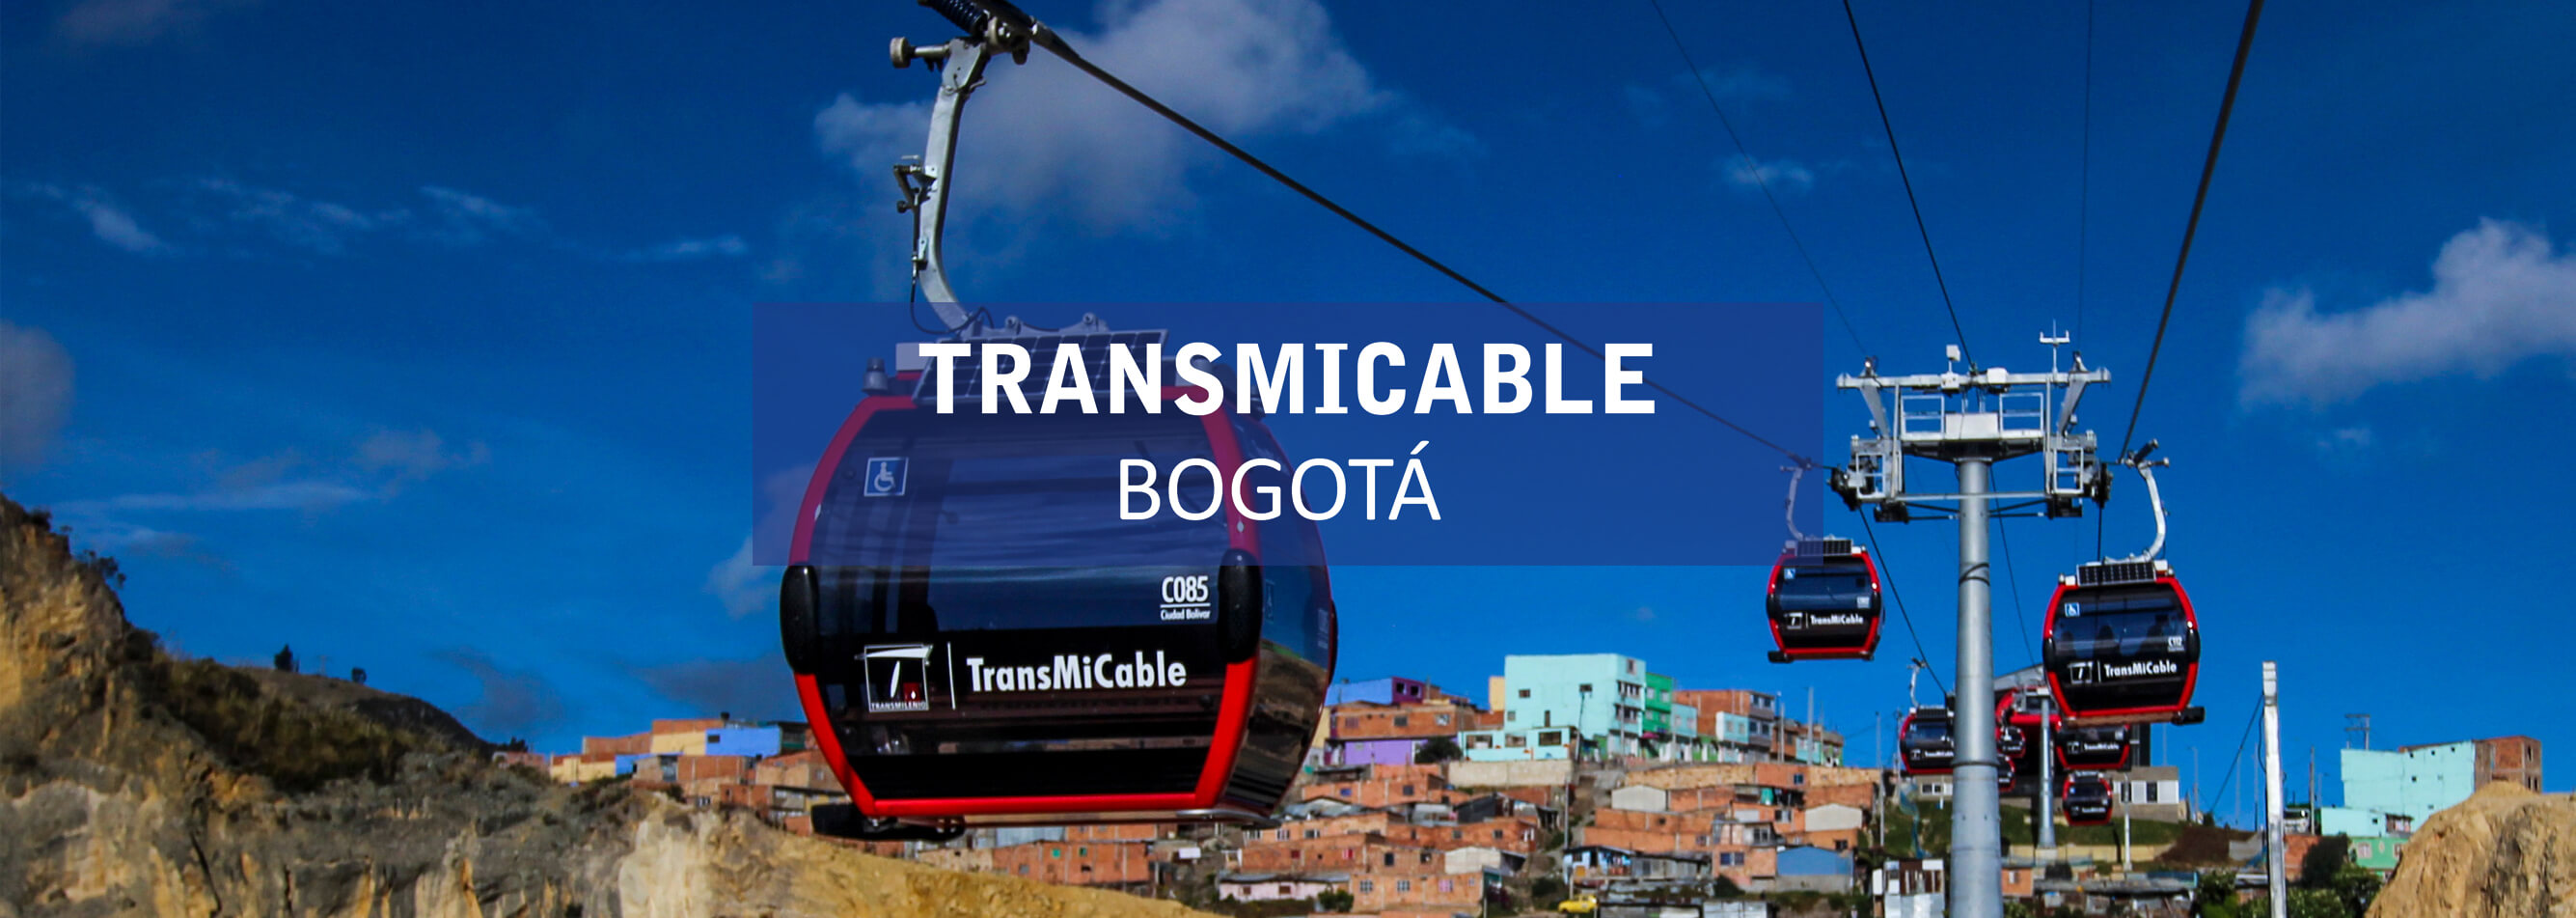 TransMicable Bogotá